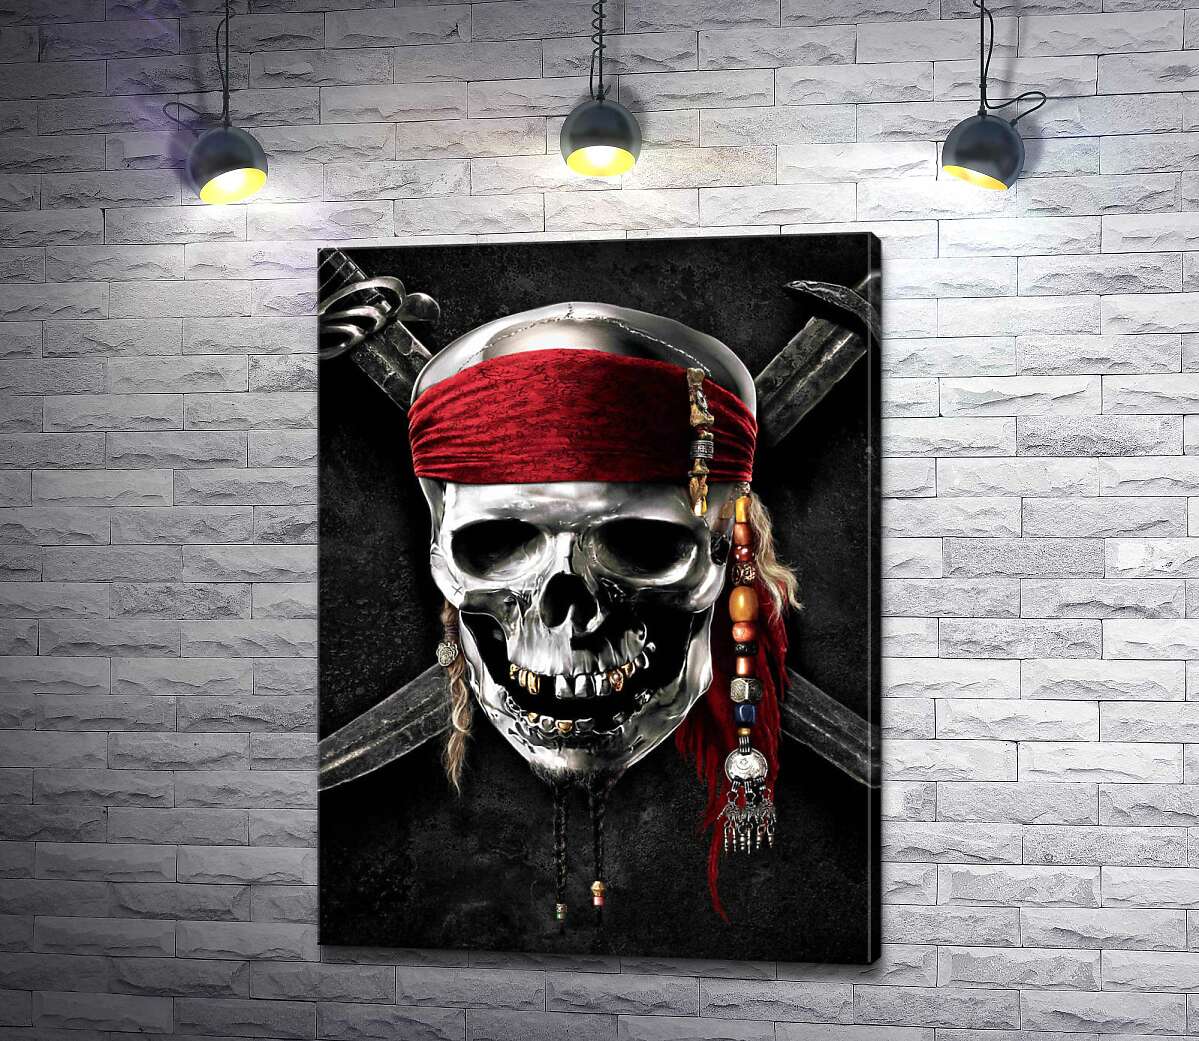 картина Знаменитый череп Джека Воробья (Jack Sparrow) на фильме "Пираты Карибского моря" (Pirates of the Caribbean)